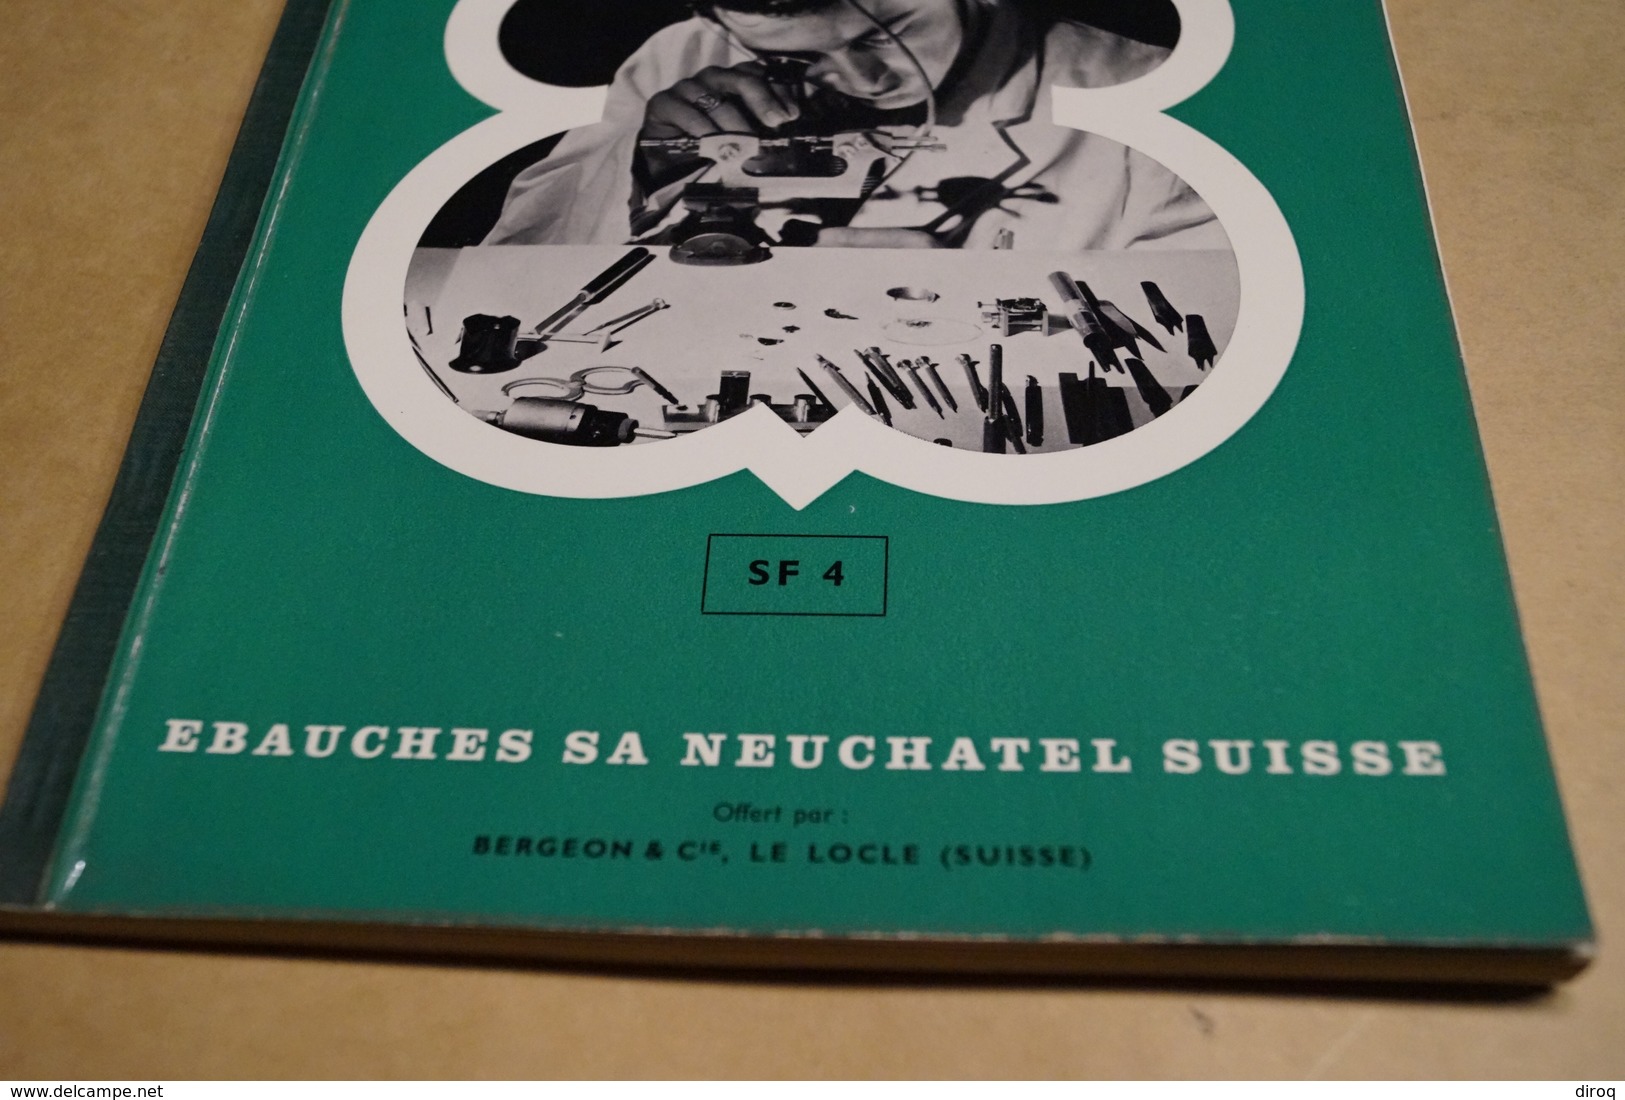 ancien catalogue d'Horlogerie Suisse,Ebauche S.A.Neuchatel,complet,28 Cm. sur 21,5 Cm.